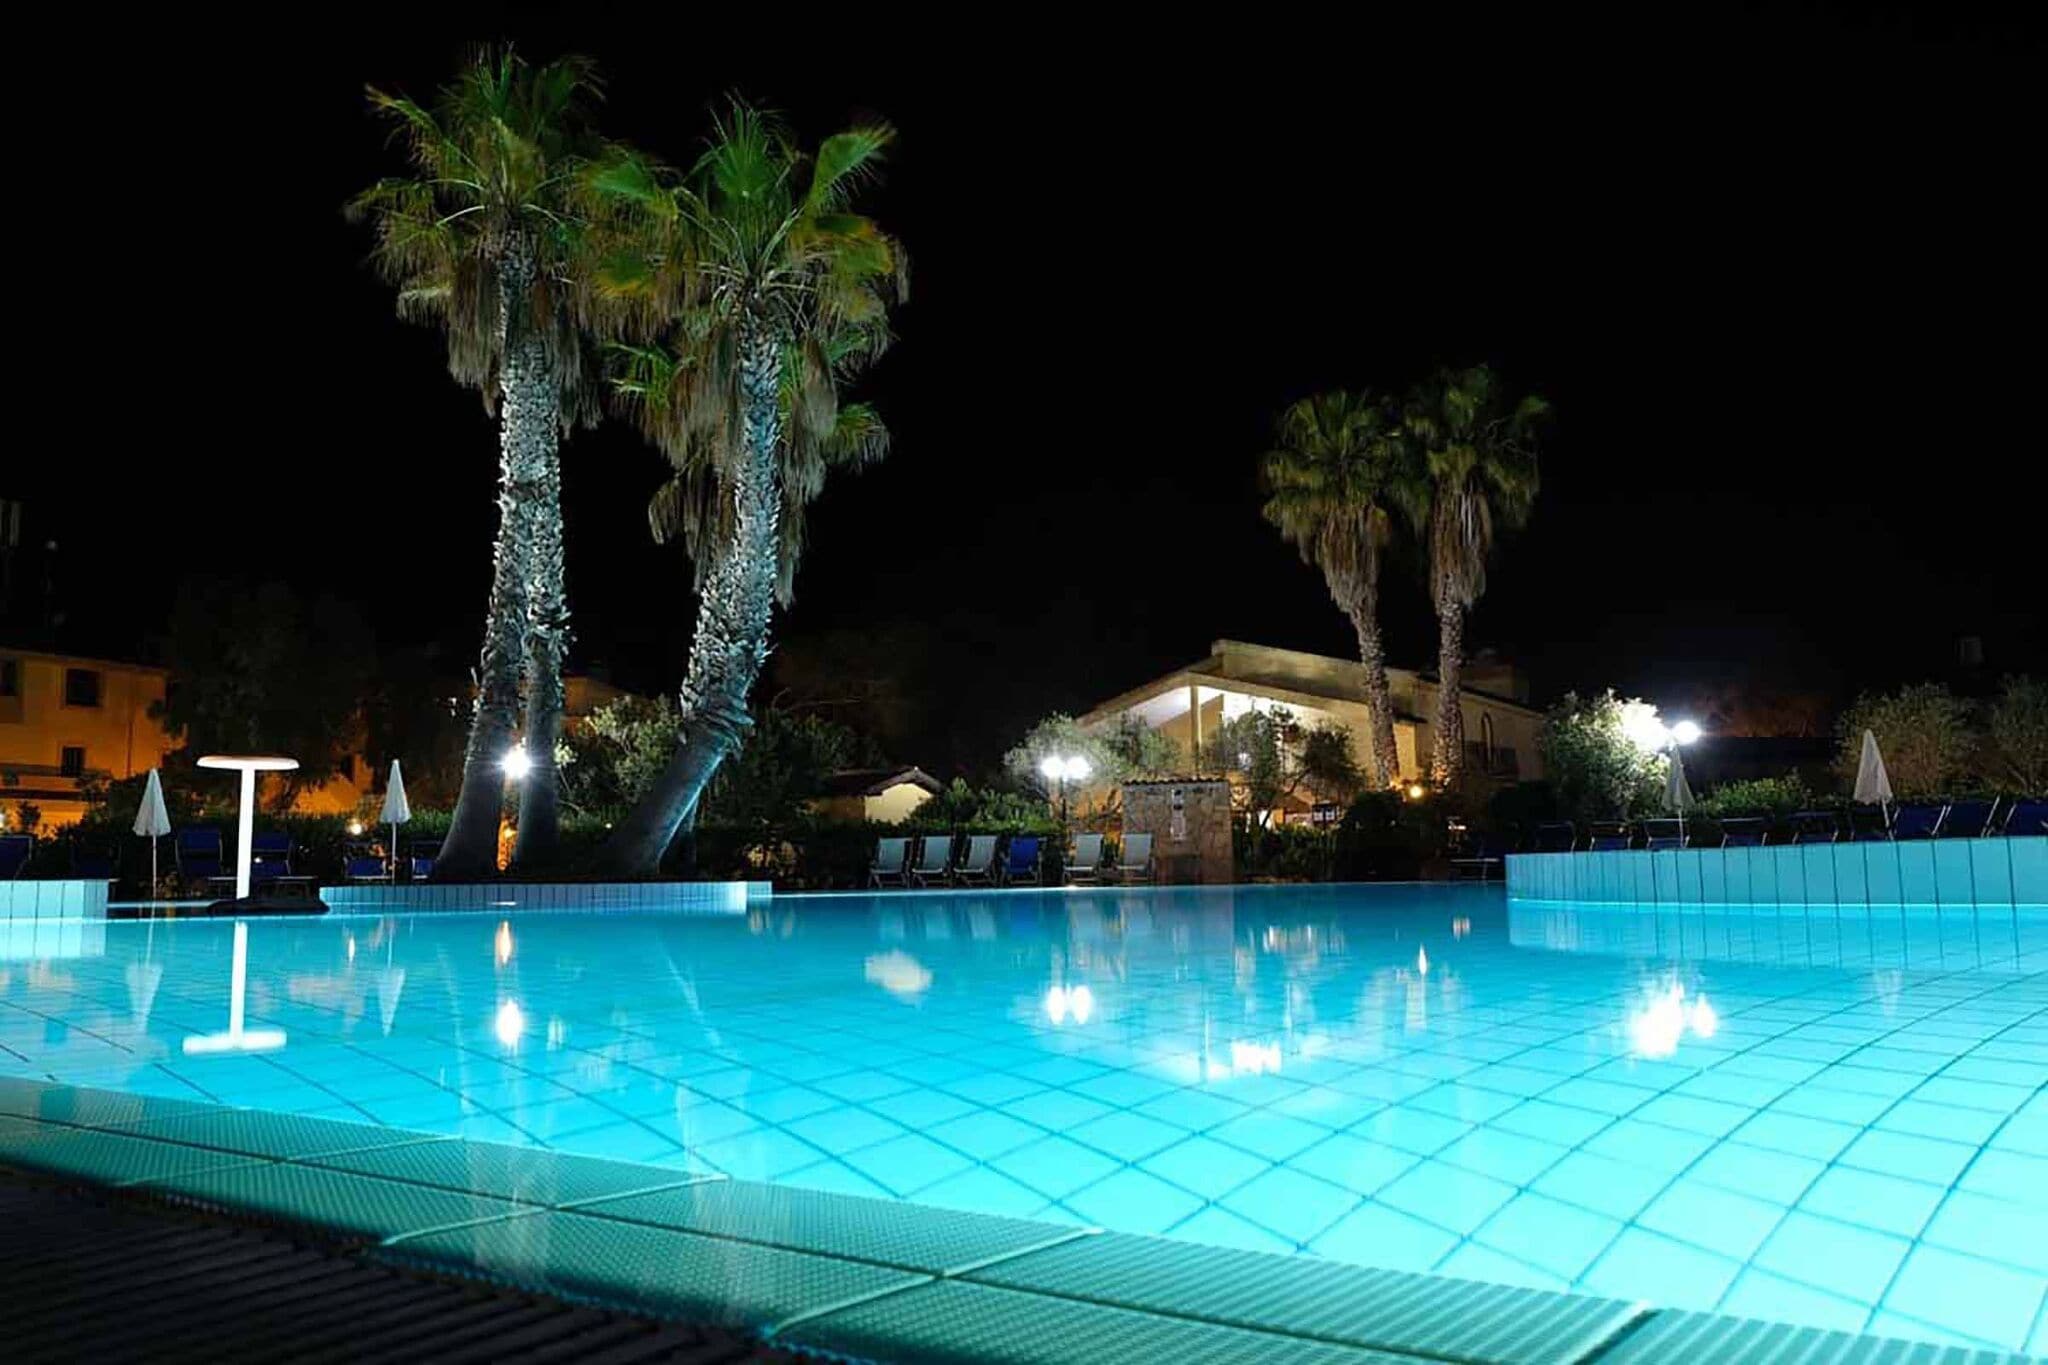 Kleine Villa in Sardinien mit Swimmingpool und Meer in Fußnähe